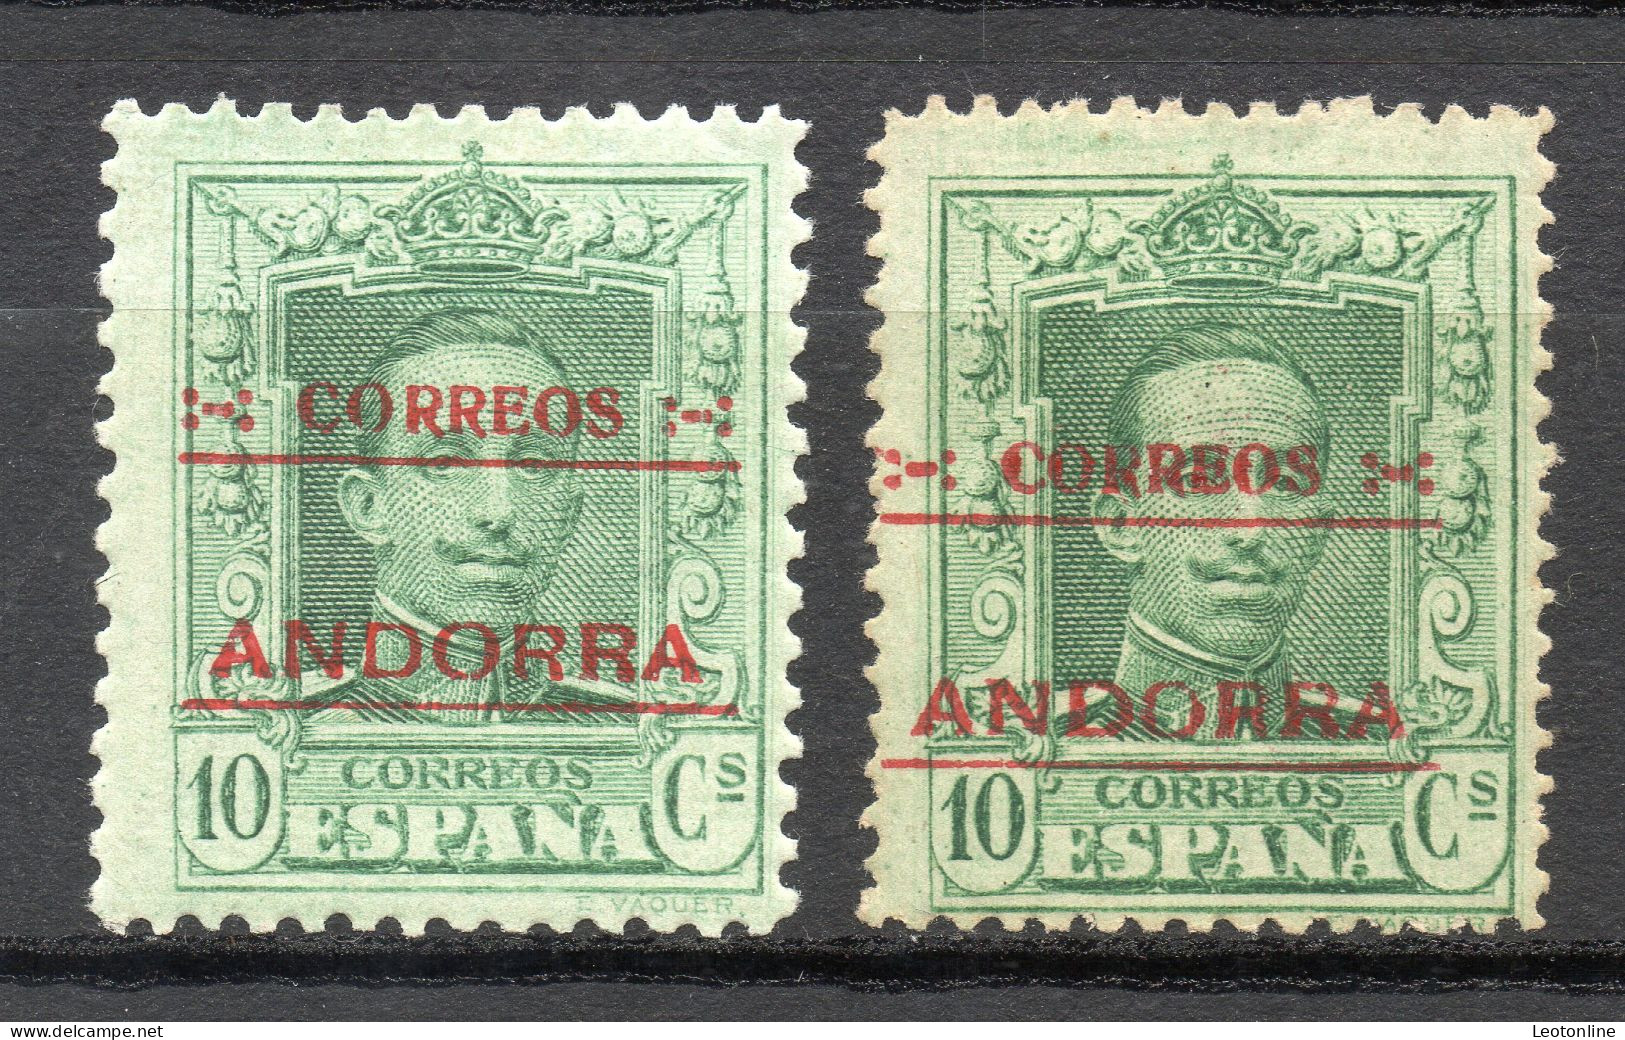 ANDORRA ESPAÑOLA 1928 - EDIFIL Nº 3 Y 3d (DENTADO 14) NUEVOS CON SEÑAL* MH - Unused Stamps